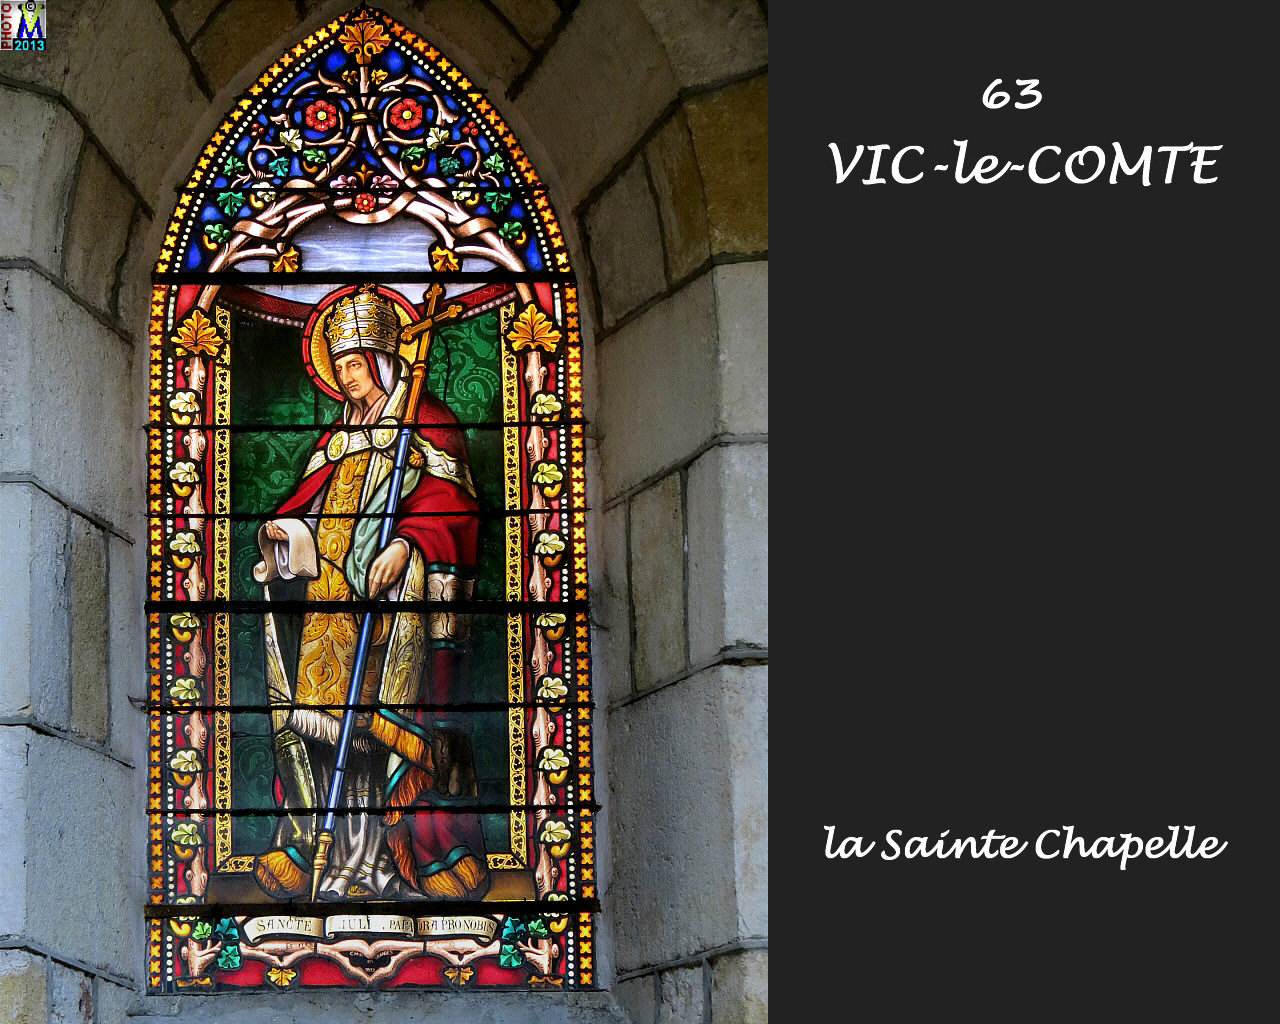 63VIC-COMTE_chapelle_216.jpg